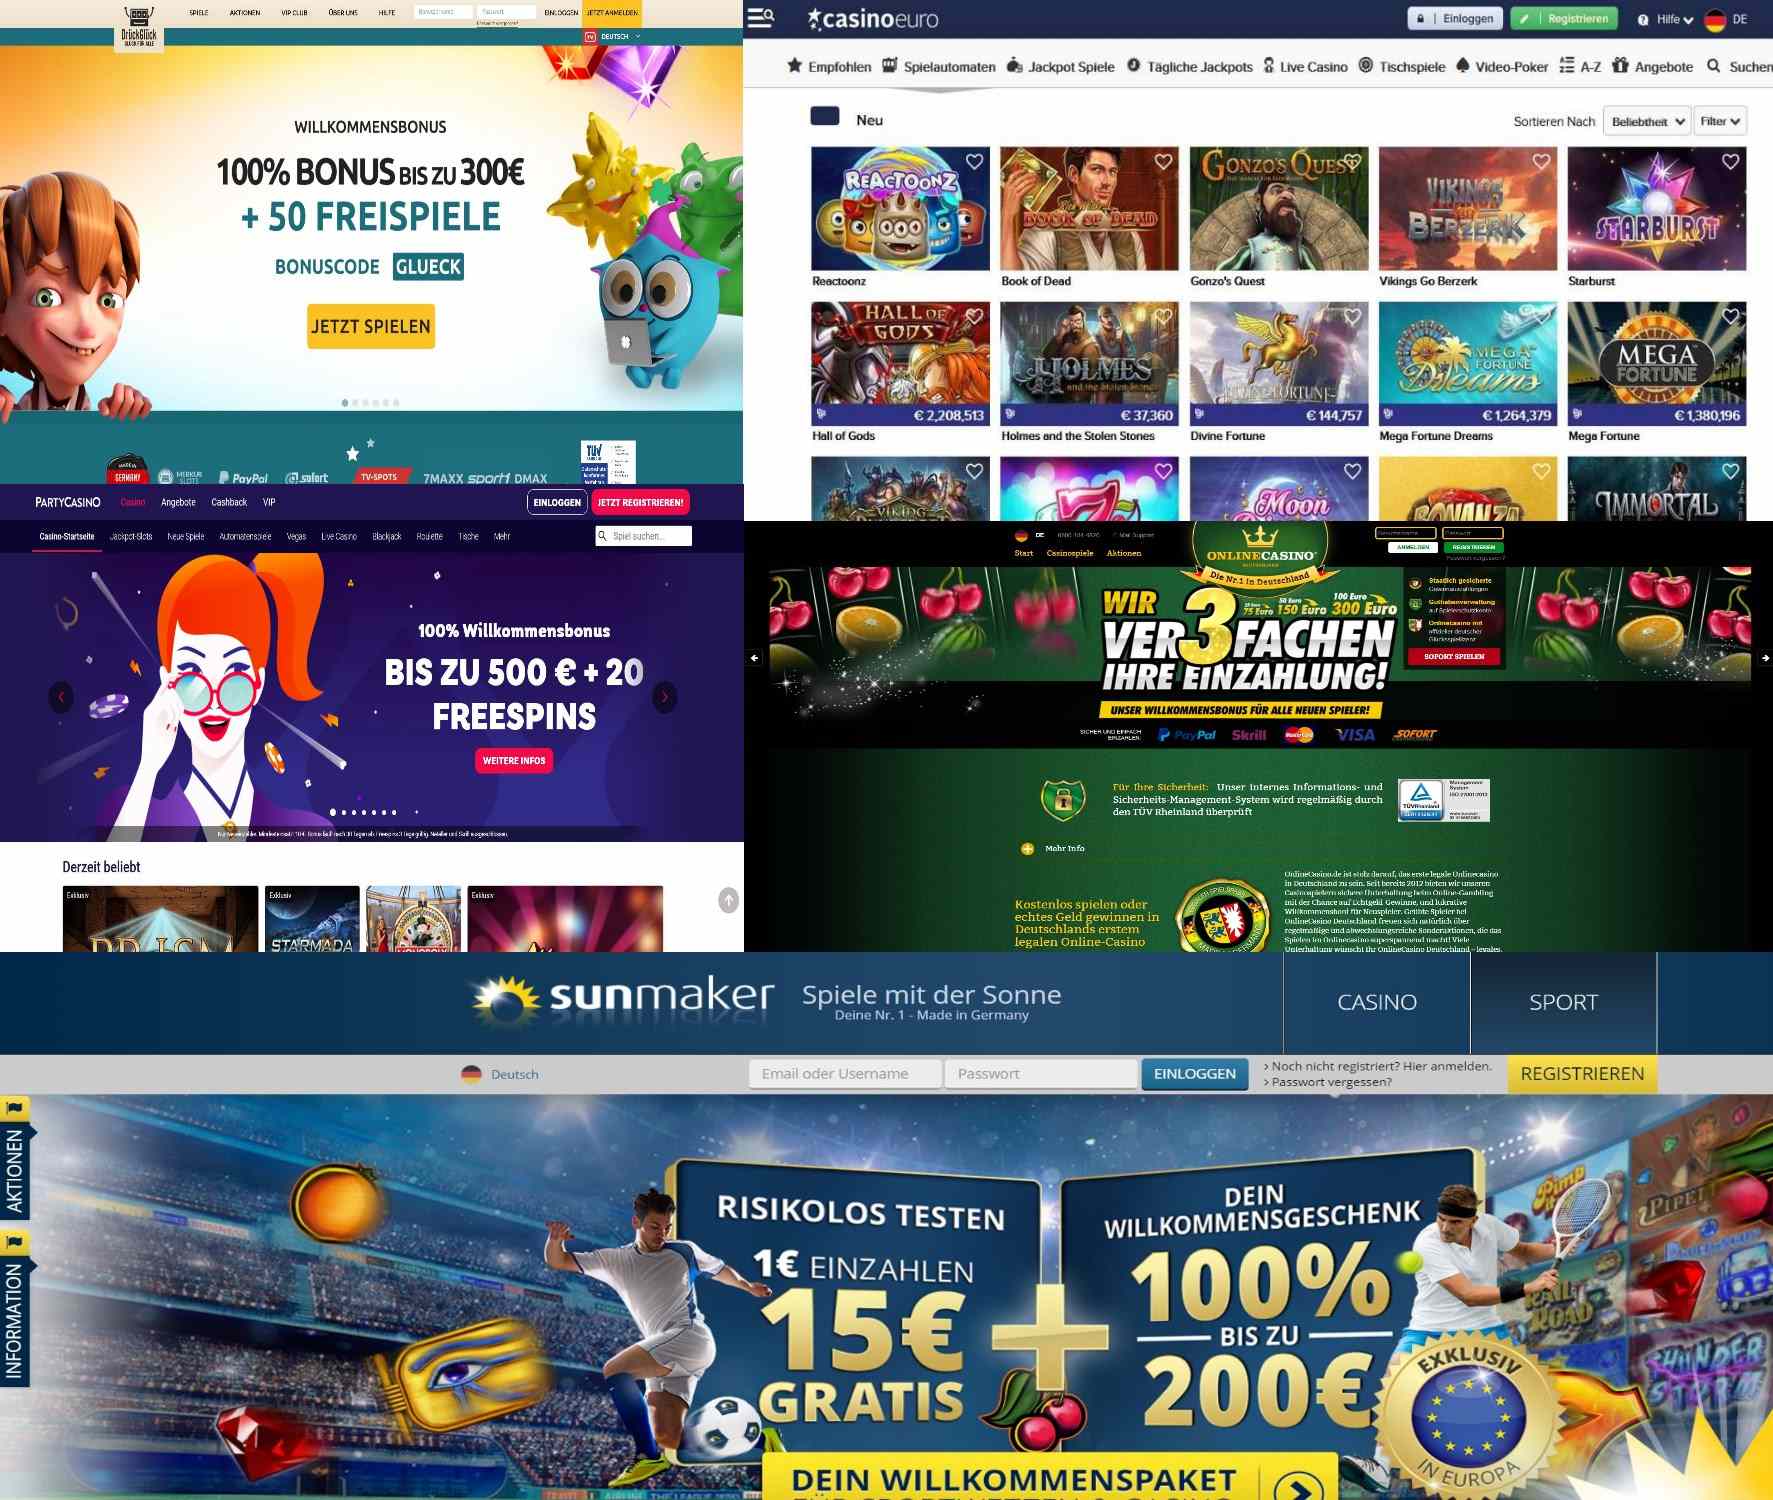 Deutsche online Casinos